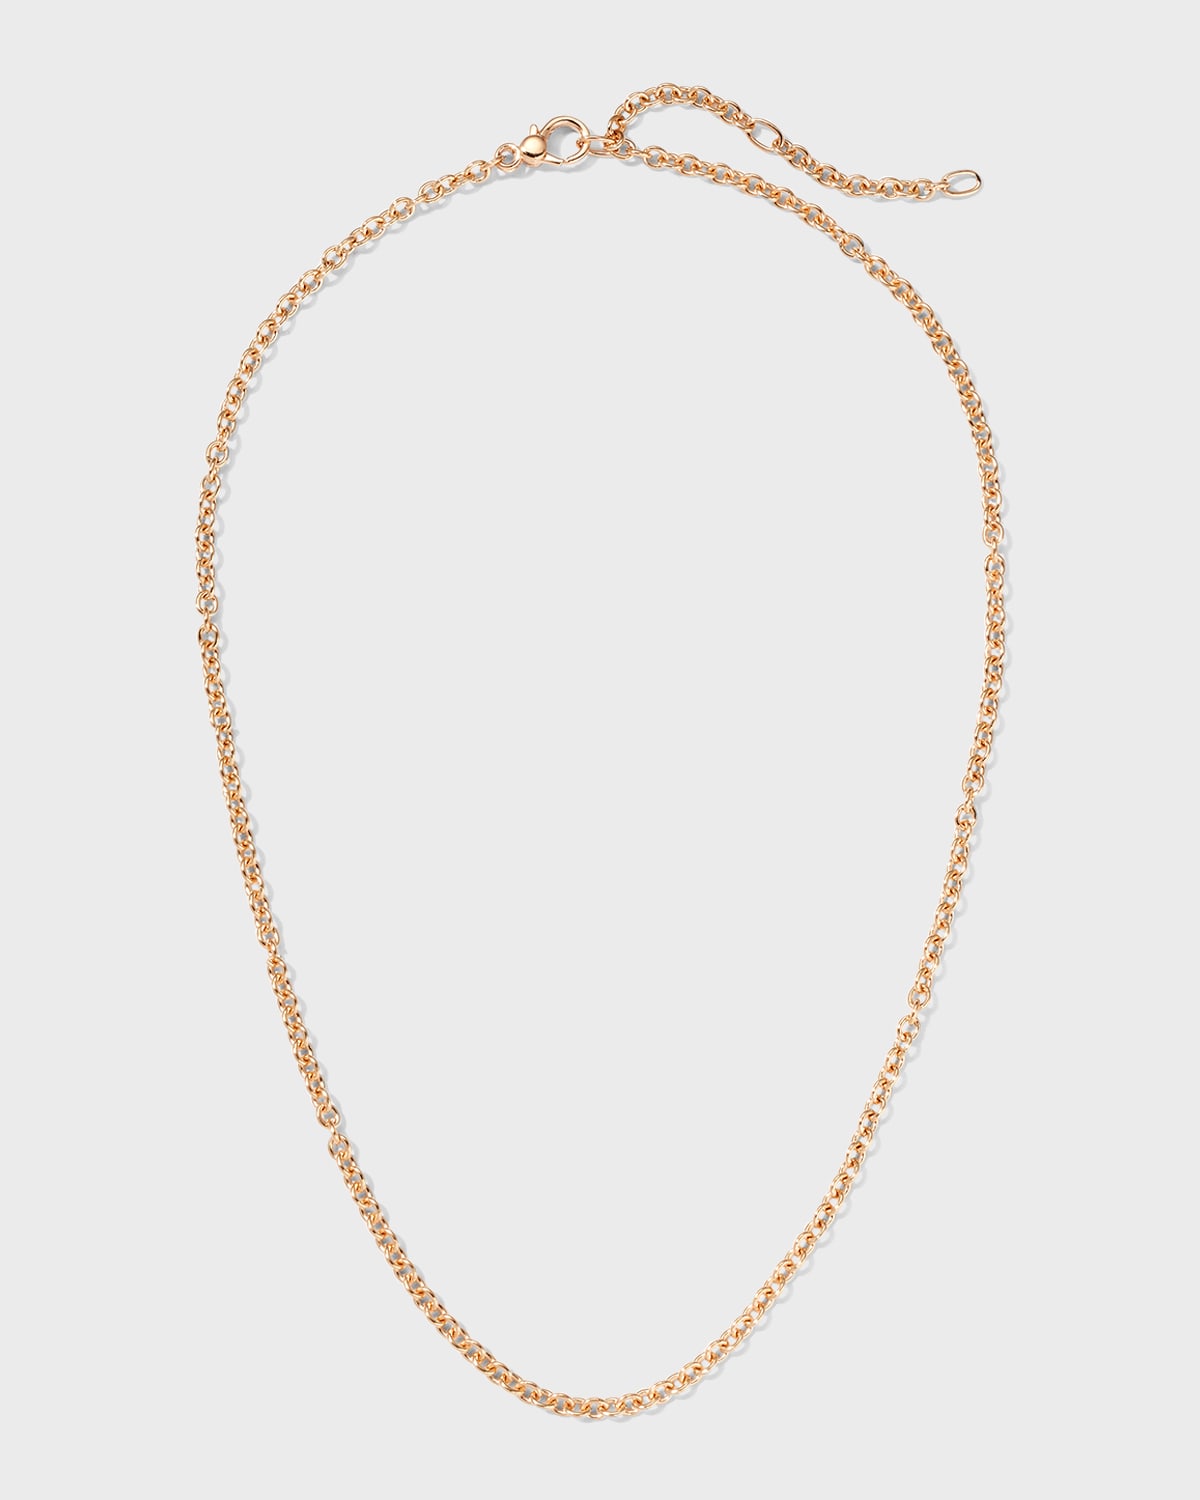 18K Rose Gold Necklace, 16.5"L